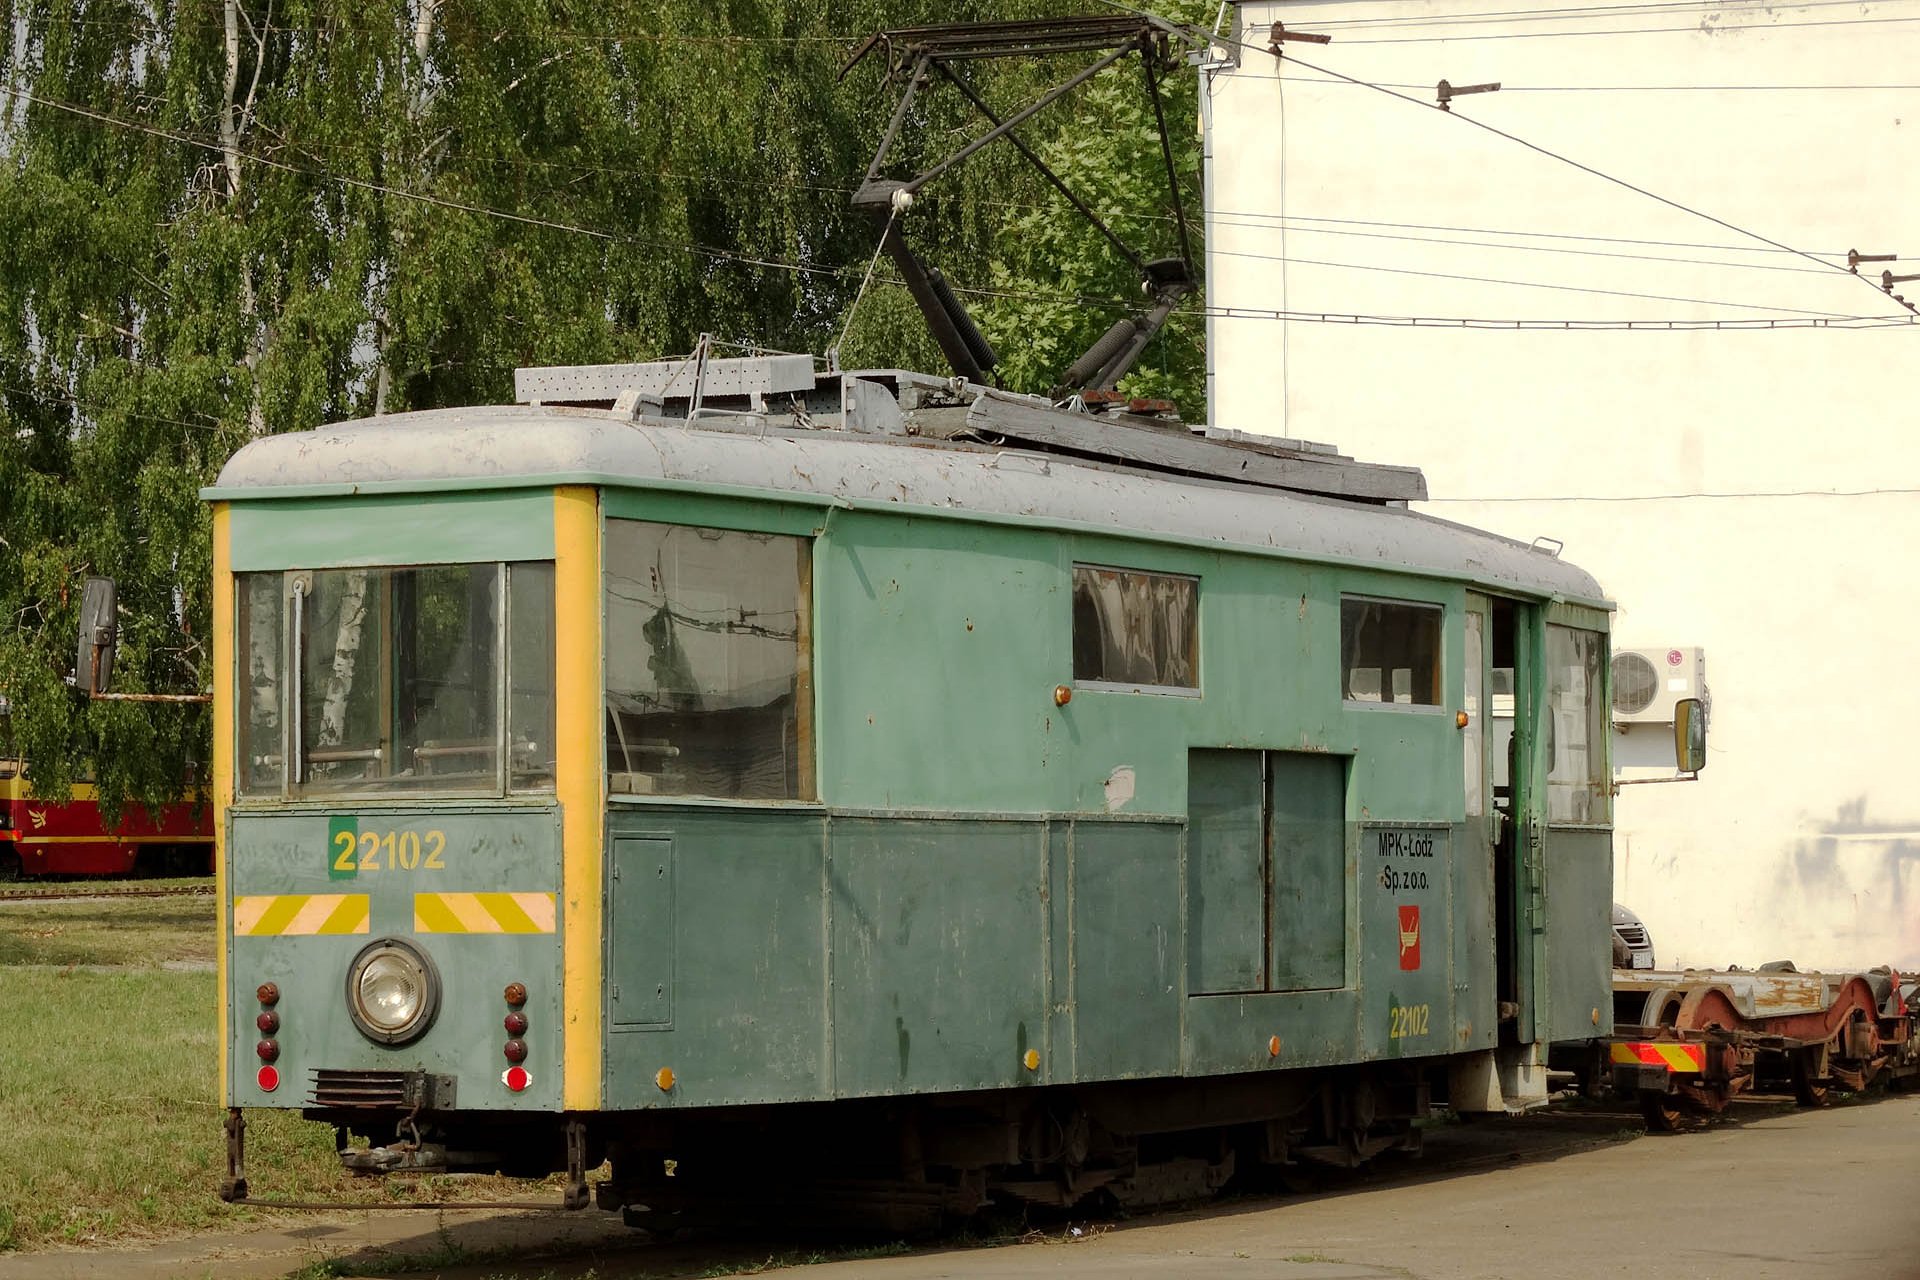 Konstal 2N 22102 Gebaut 1954 begann er mit der Nummer 113, ehe er 1979 Arbeitstriebwagen wurde. Built in 1954 it started as 113, in 1979 this tram became a working vehicle.